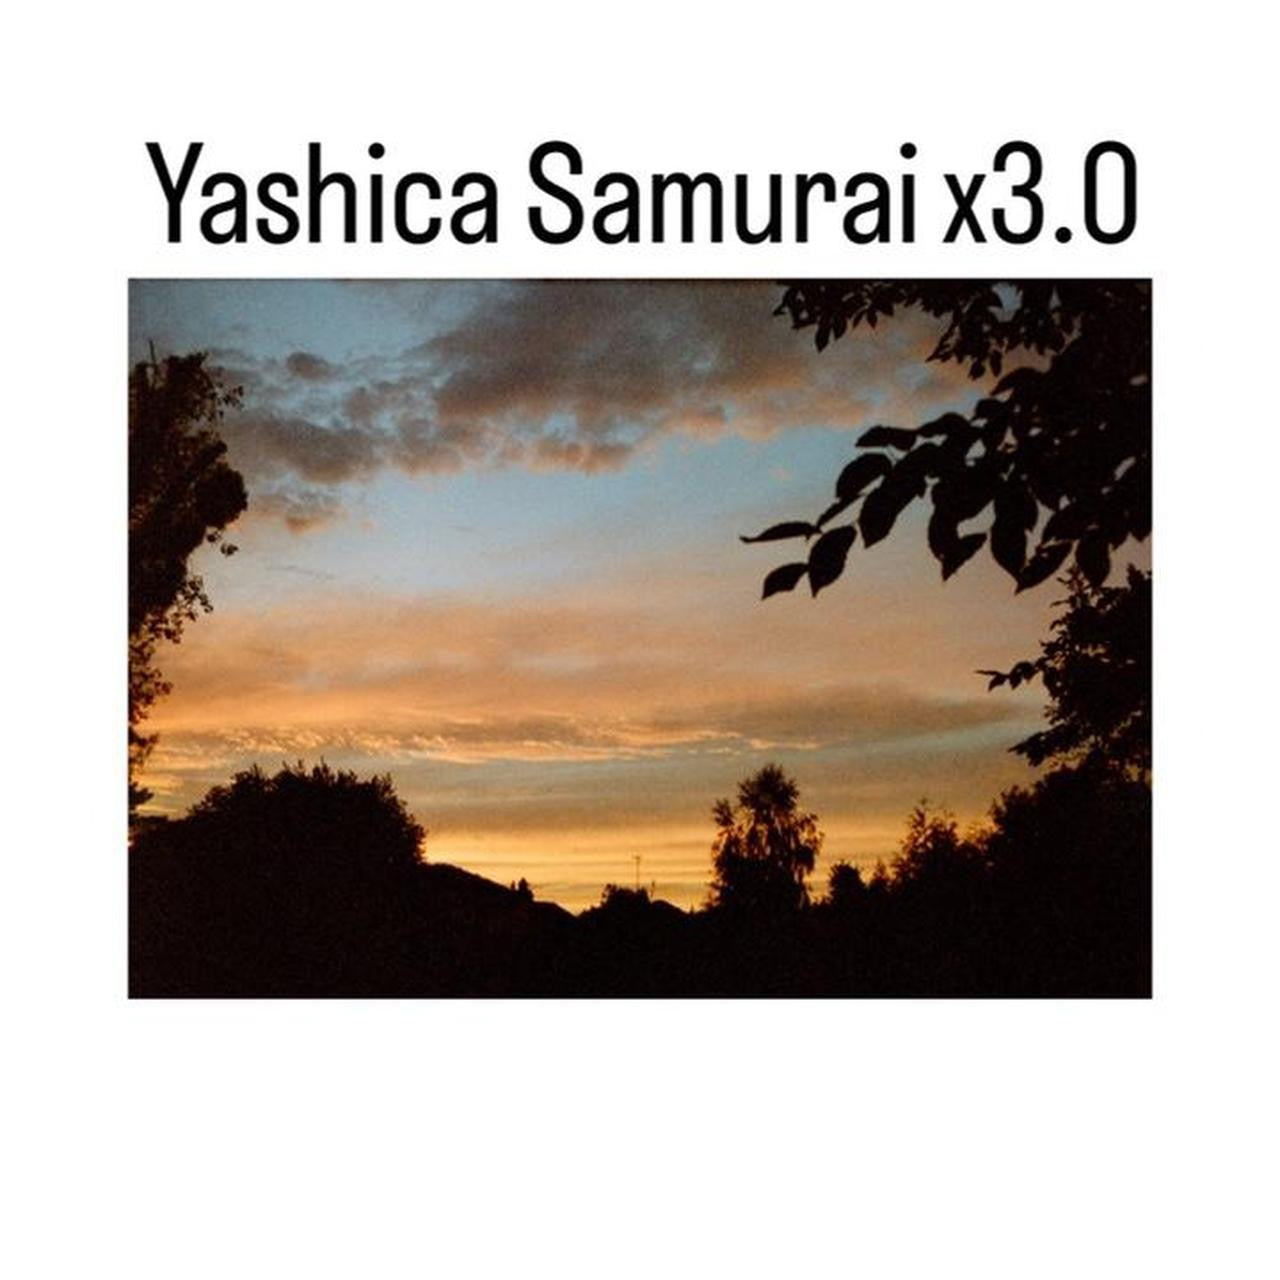 Yashica Samurai x3.0